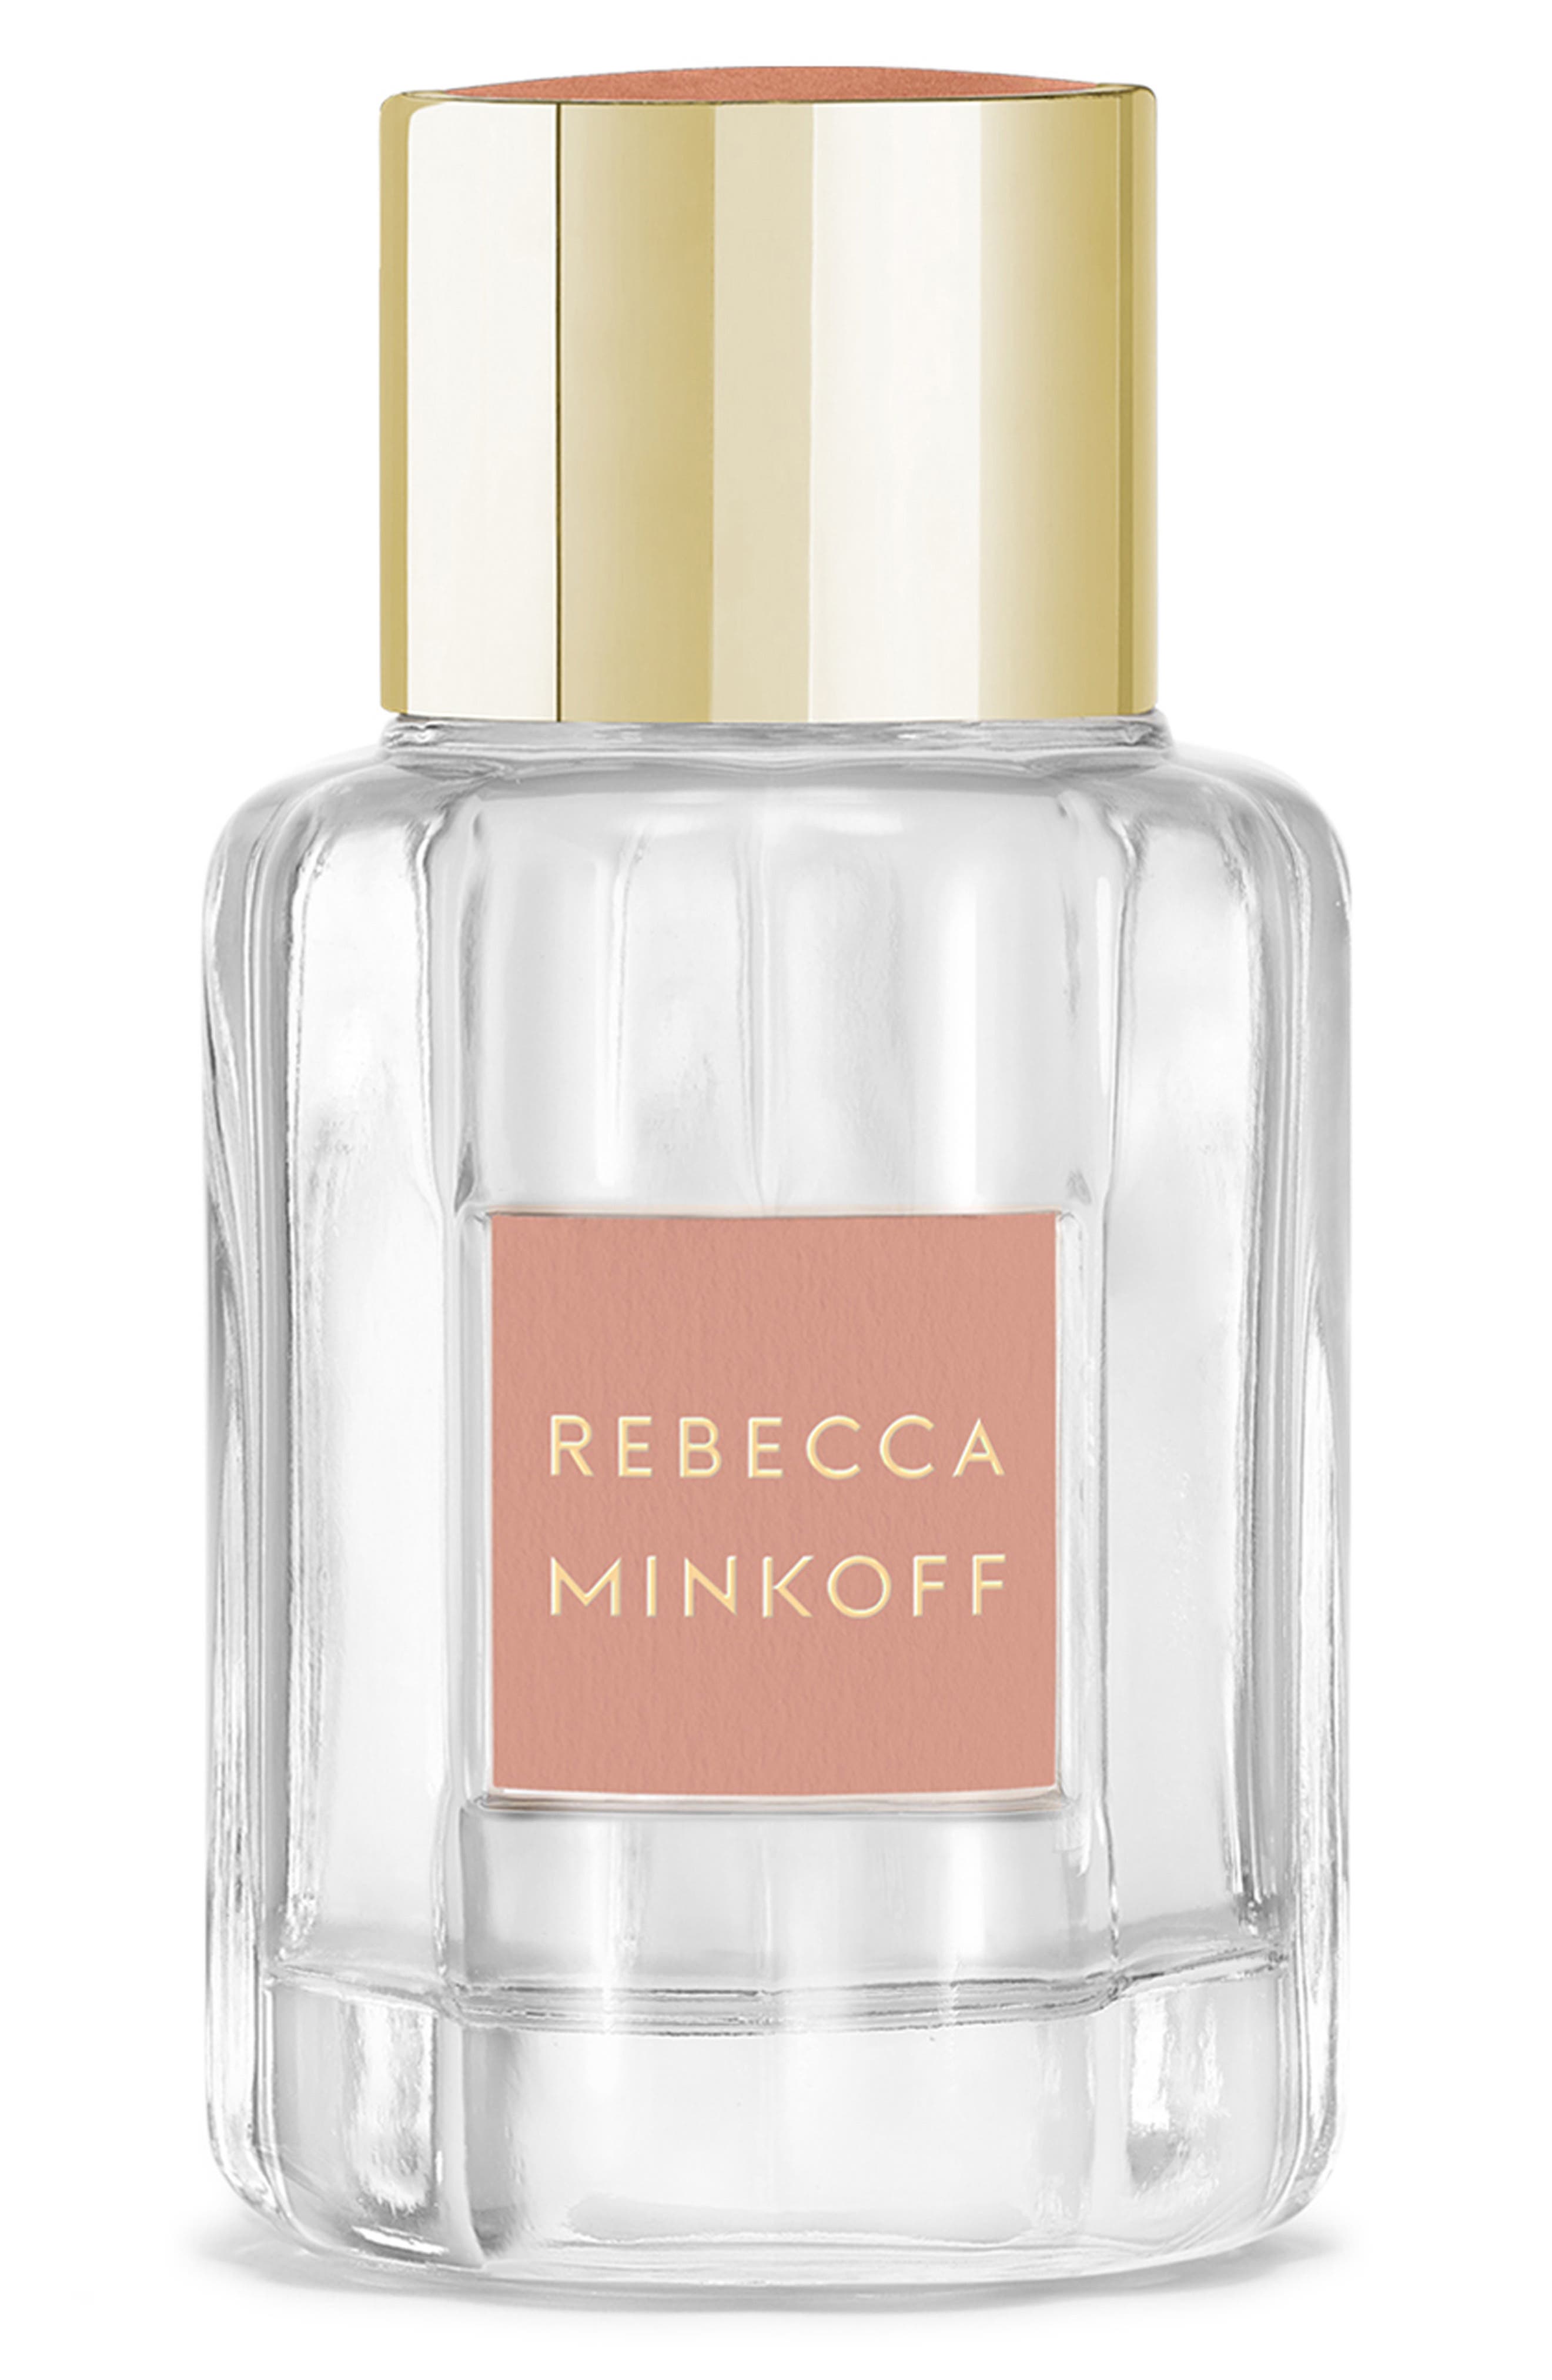 Rebecca Minkoff Blush Eau de Parfum at Nordstrom, Size 3.4 Oz